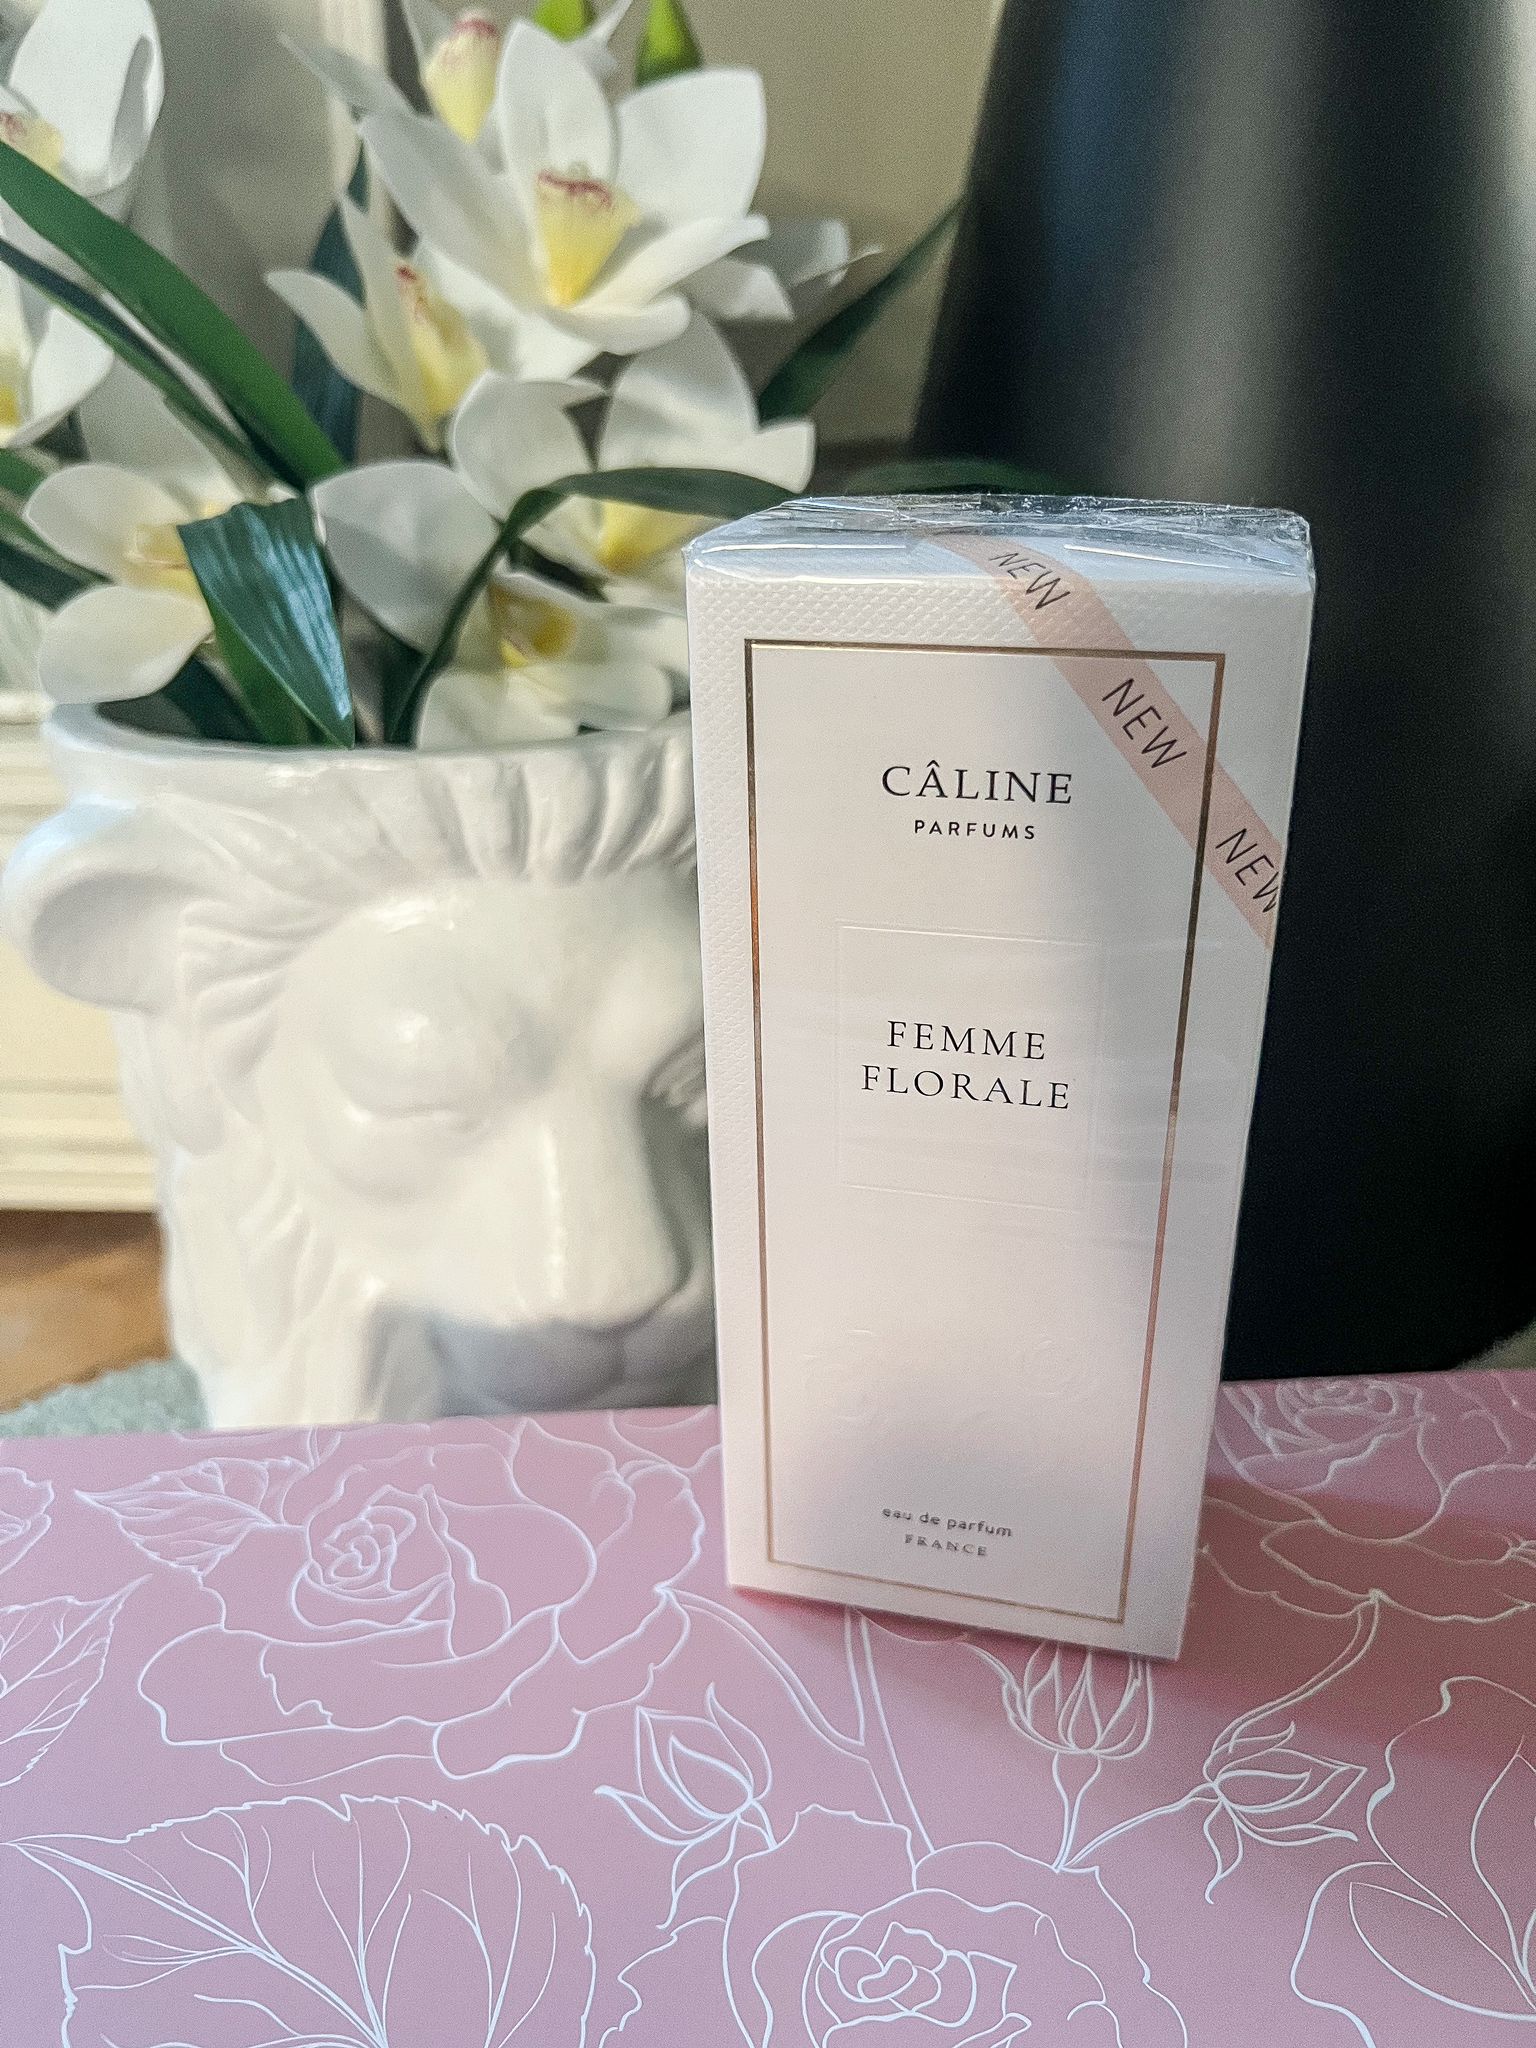 Caline Parfums